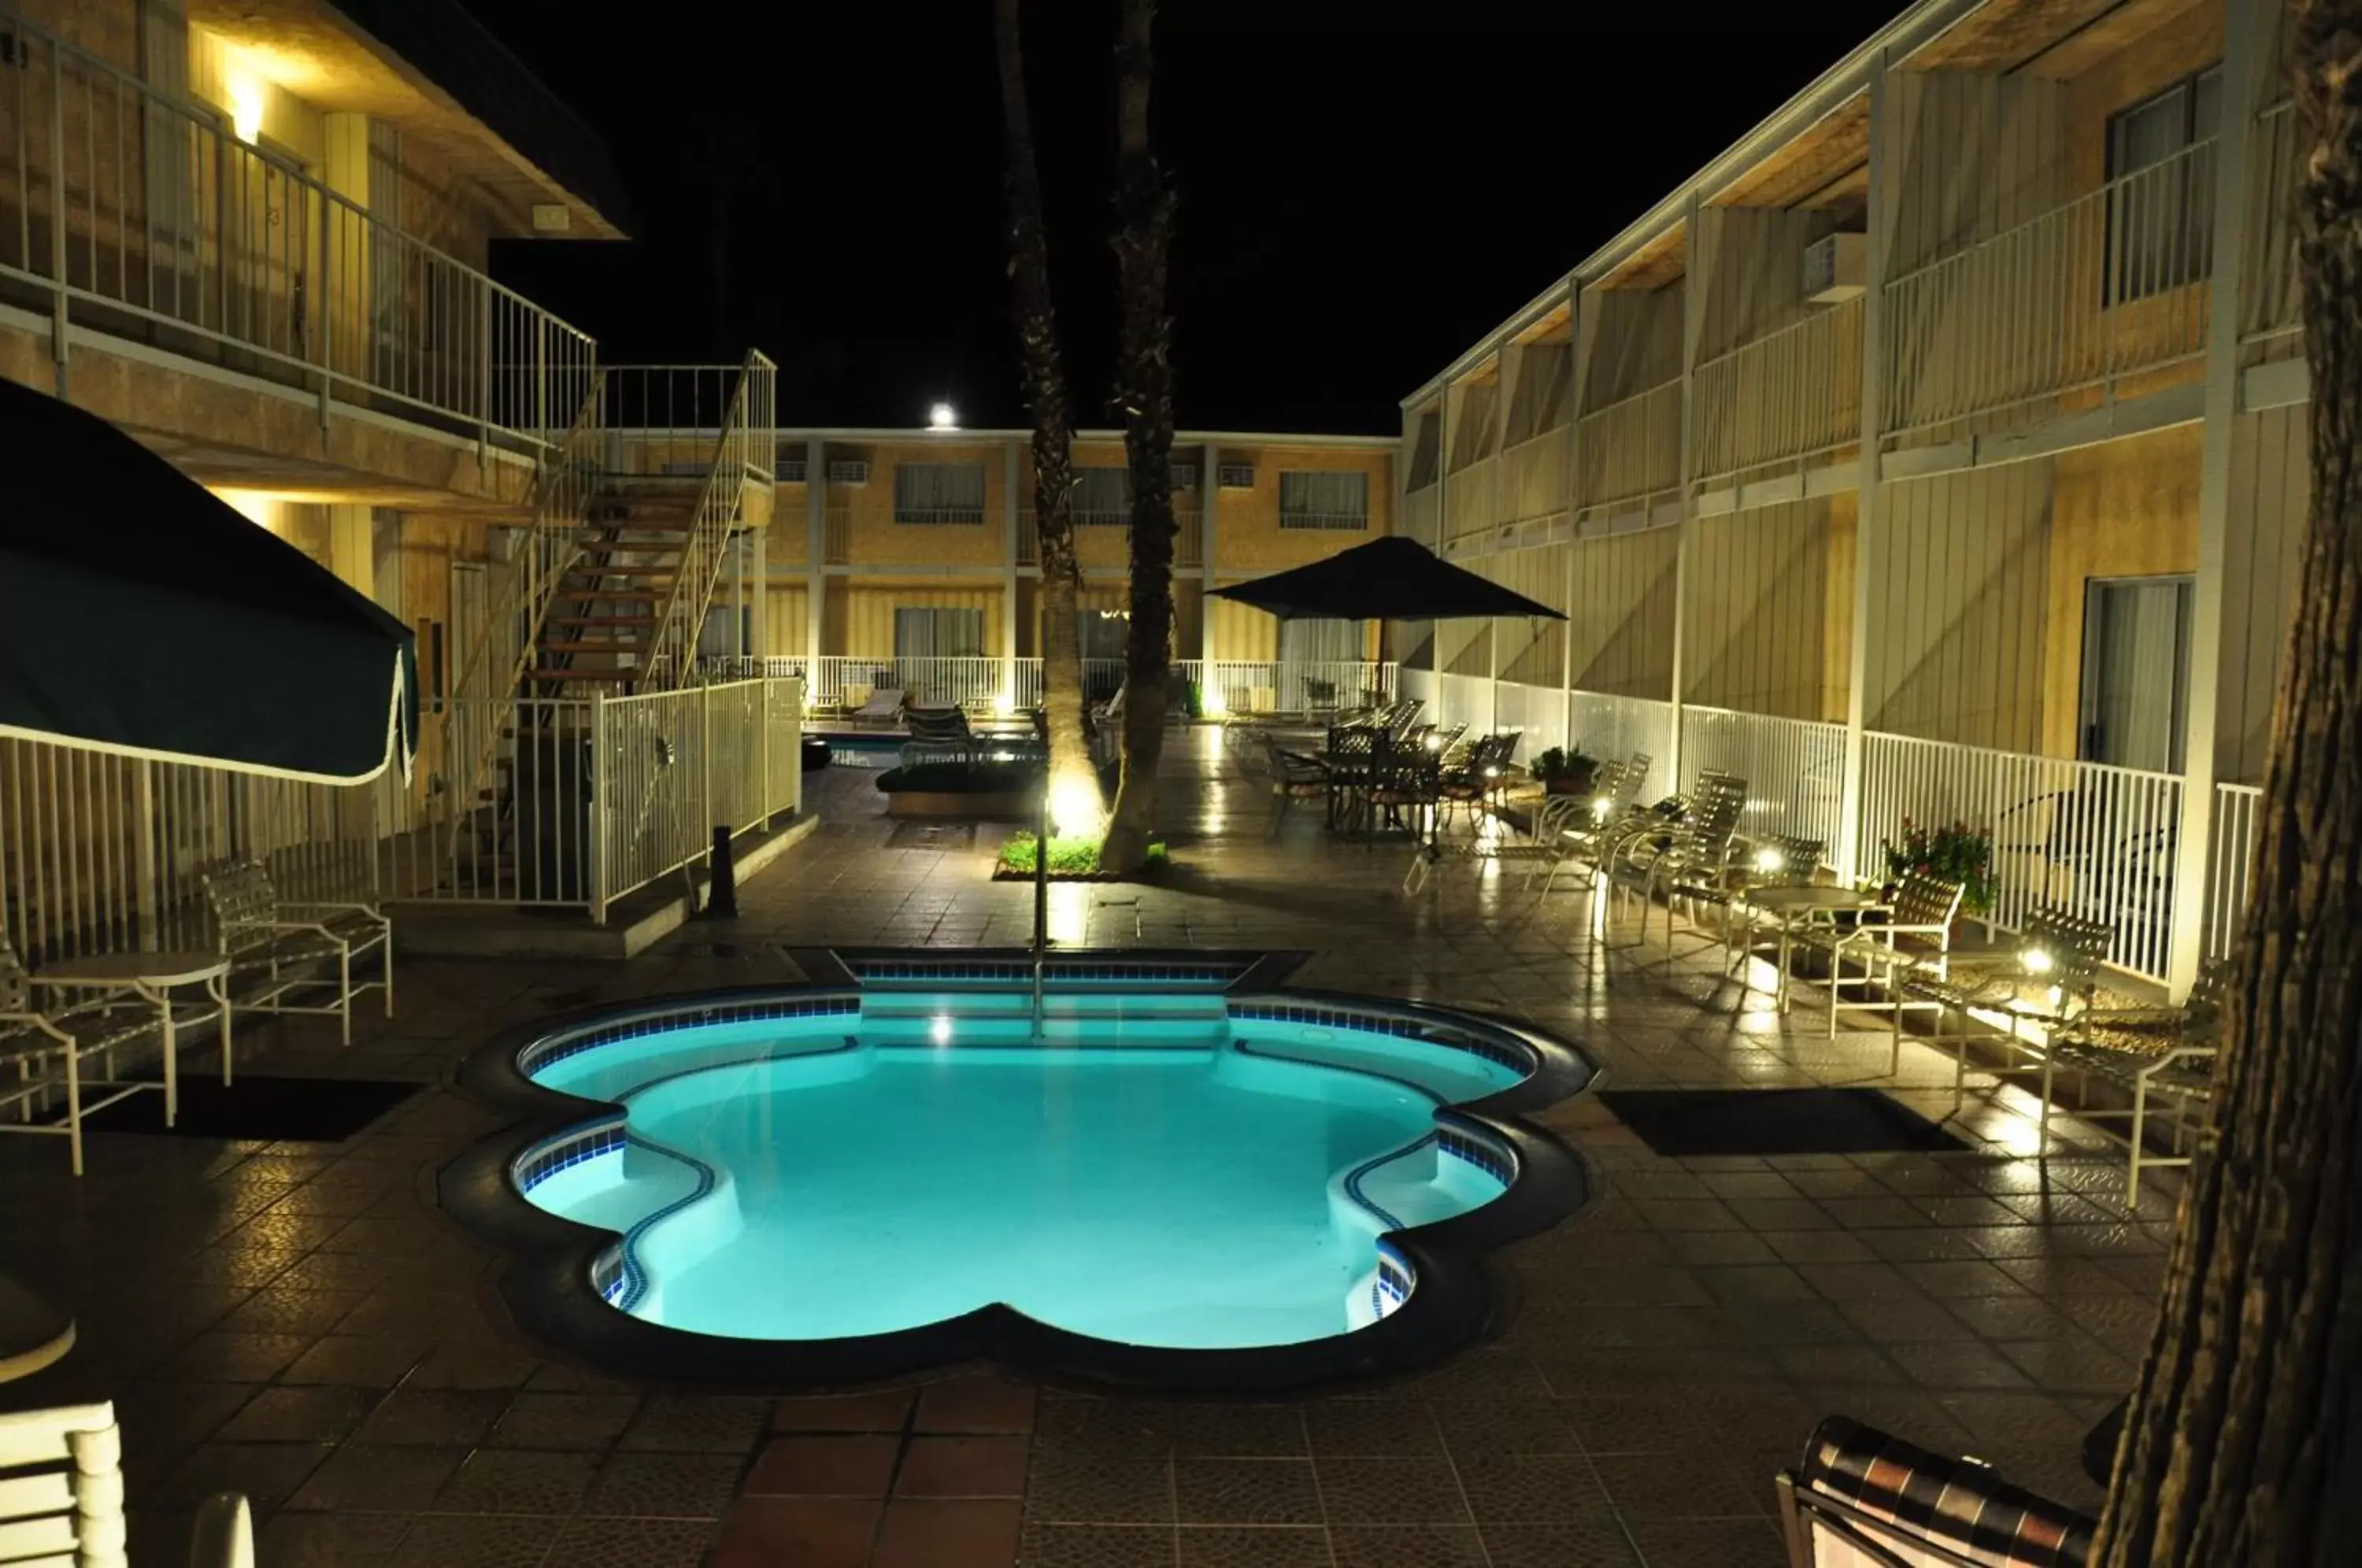 Swimming Pool in Delos Reyes Palm Springs